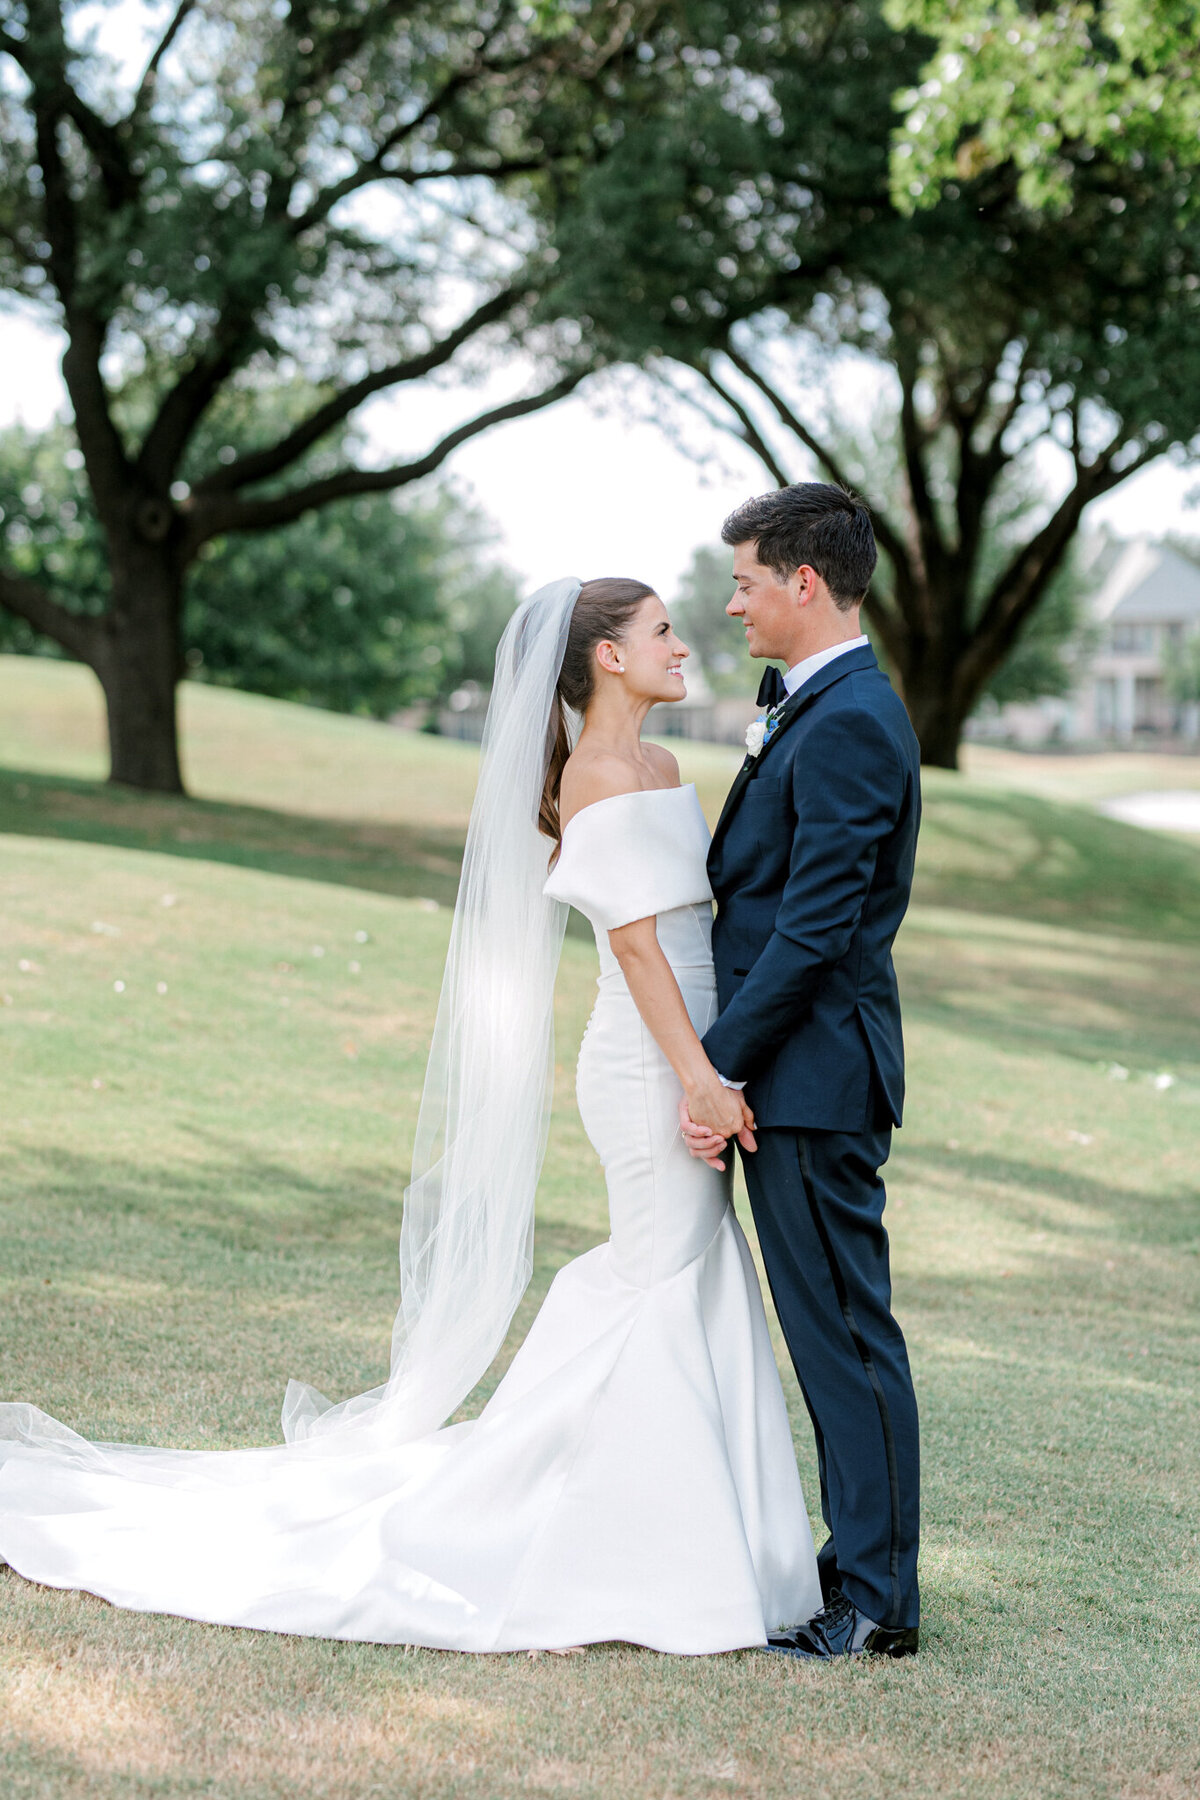 Annie & Logan's Wedding | Dallas Wedding Photographer | Sami Kathryn Photography-175